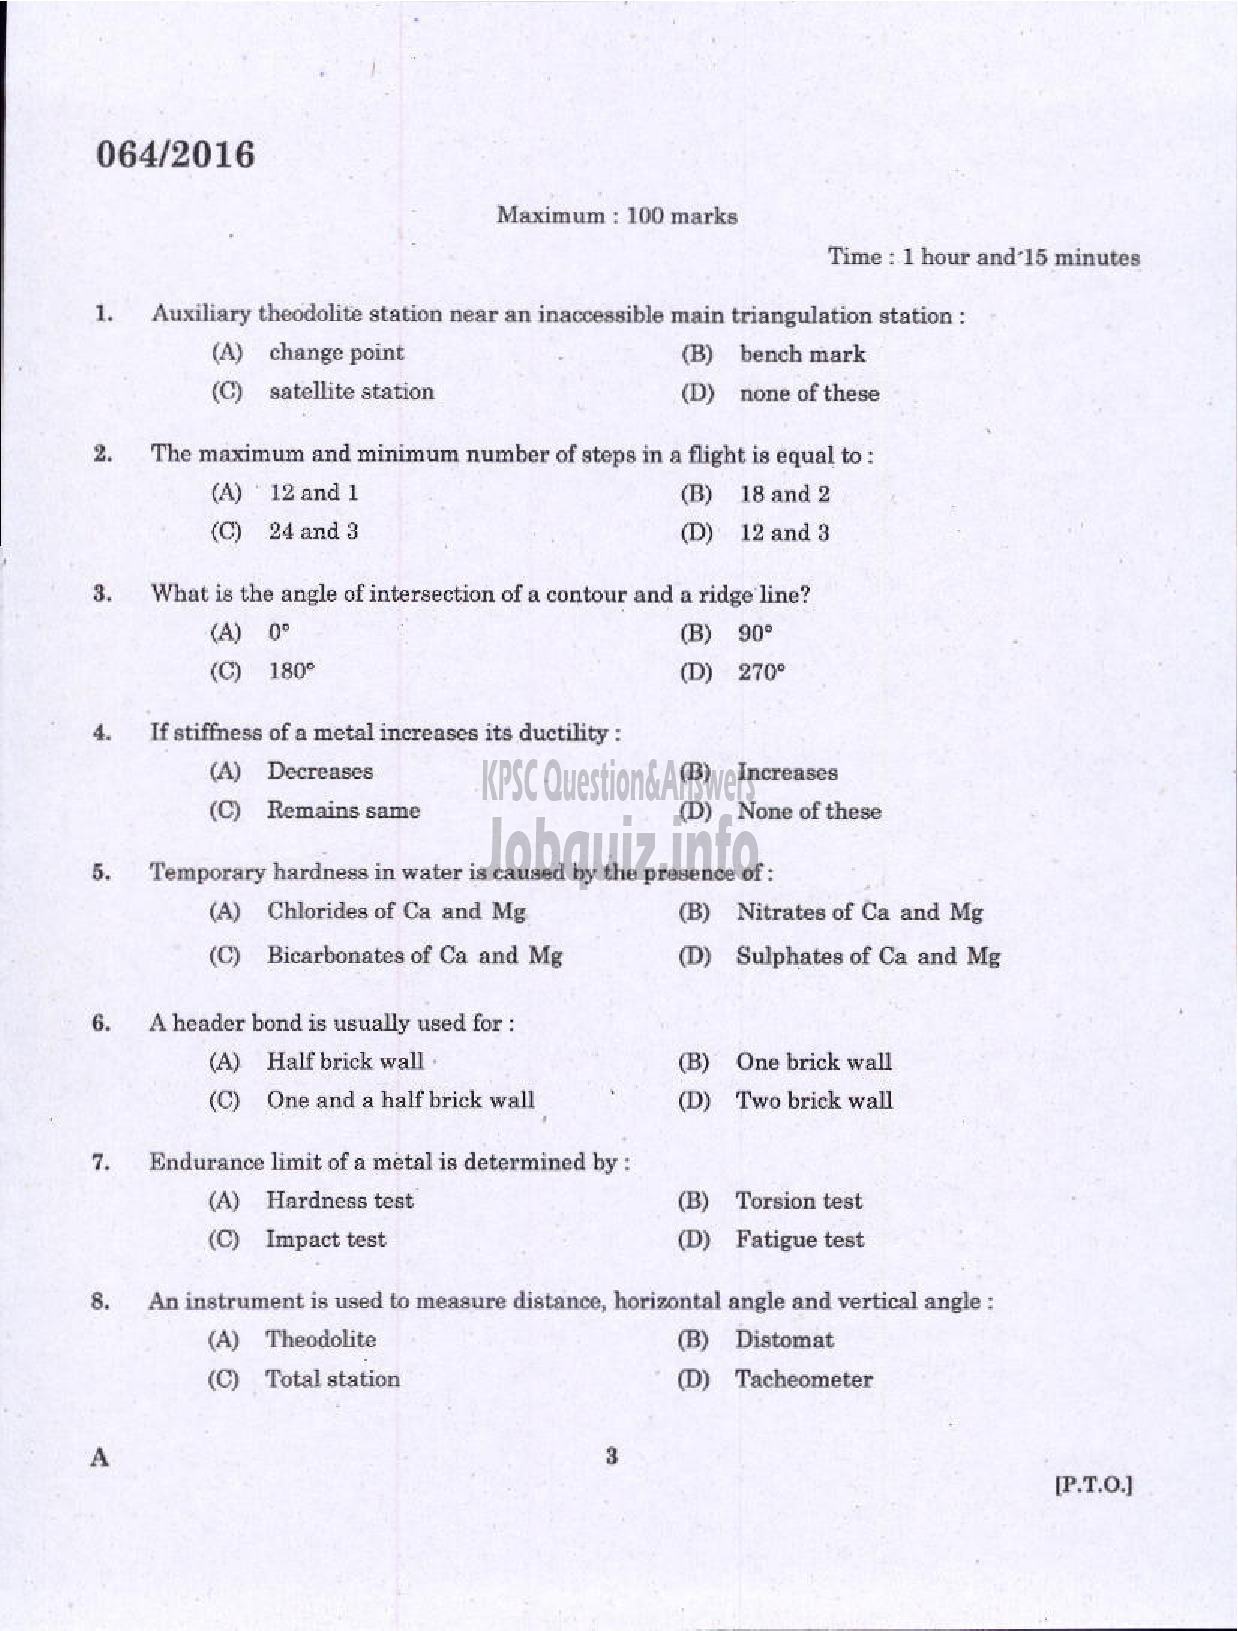 Kerala PSC Question Paper - VOCATIONAL TEACHER CIVIL CONSTRUCTION AND MAINTENANCE VHSE-1